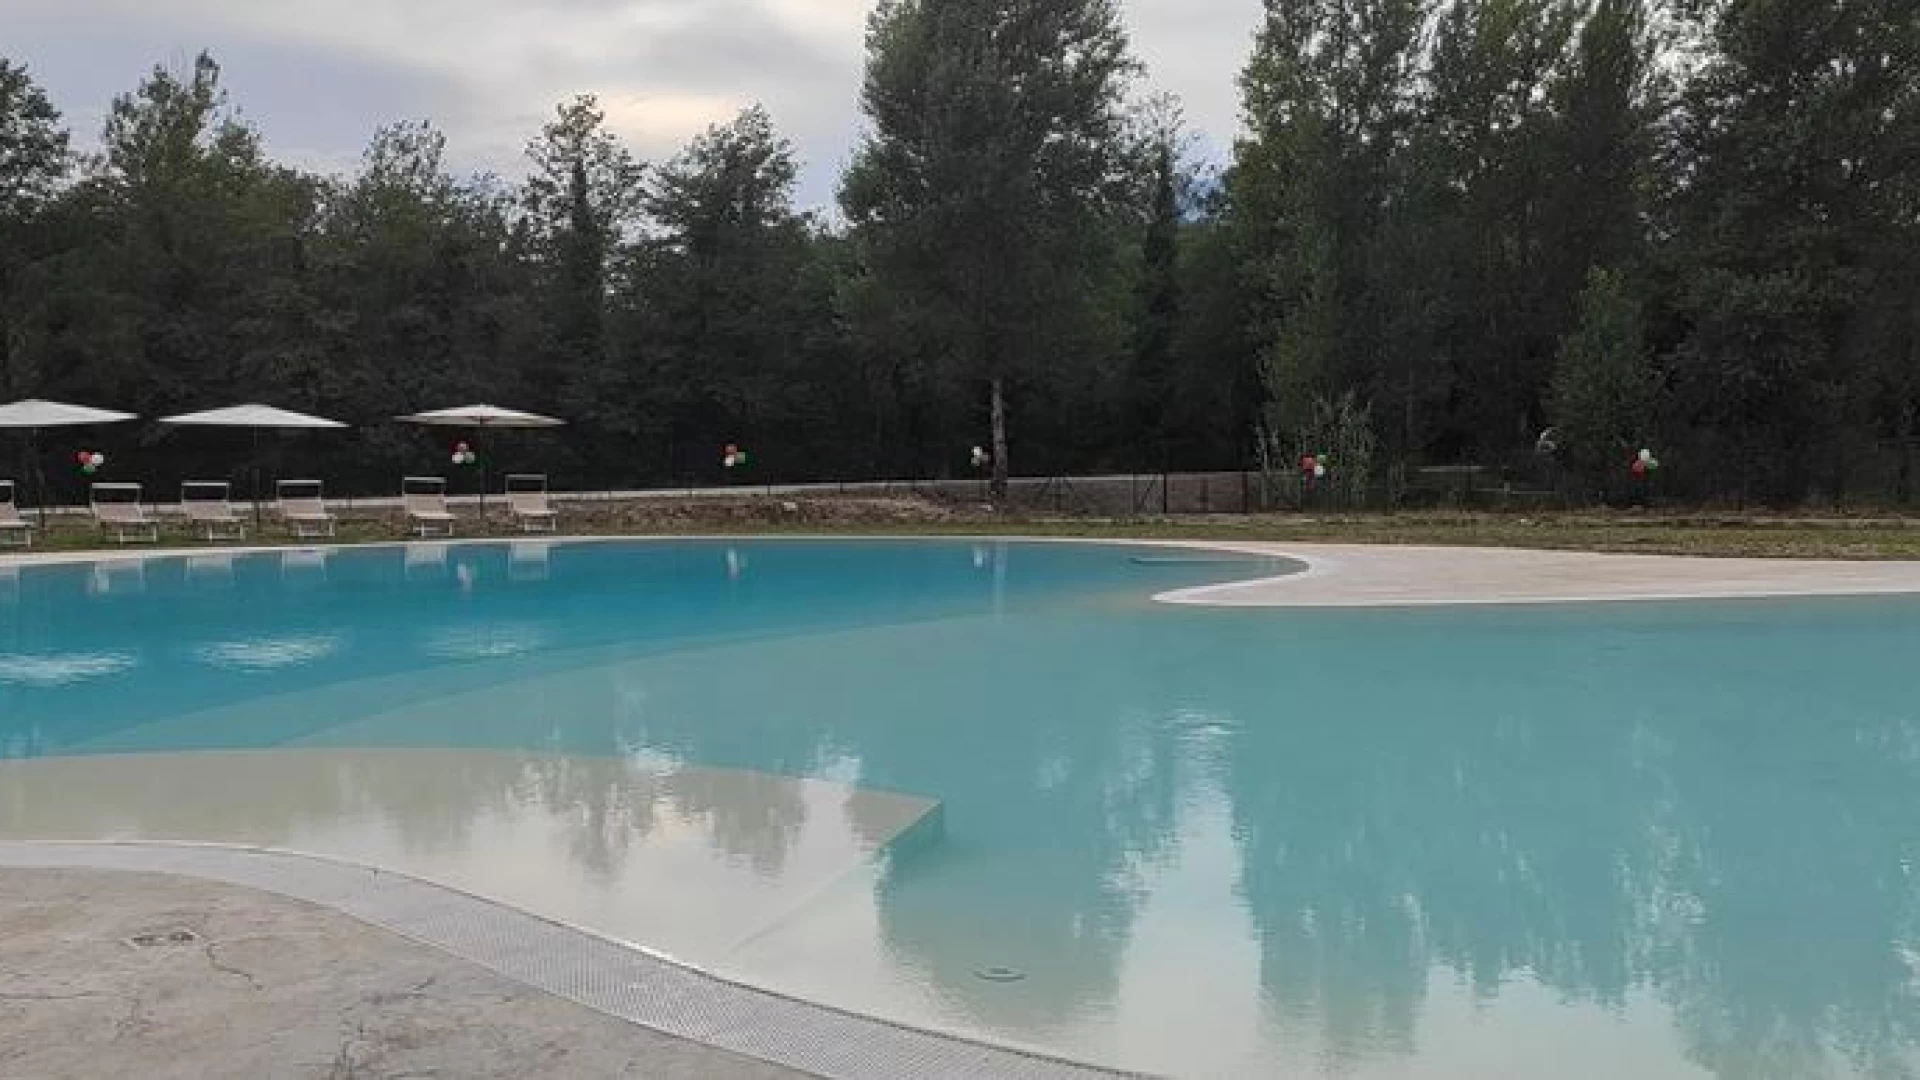 Colli a Volturno: al via una grande stagione estiva. Da oggi riapre la piscina comunale ed intanto il parco fluviale si rifà il look…